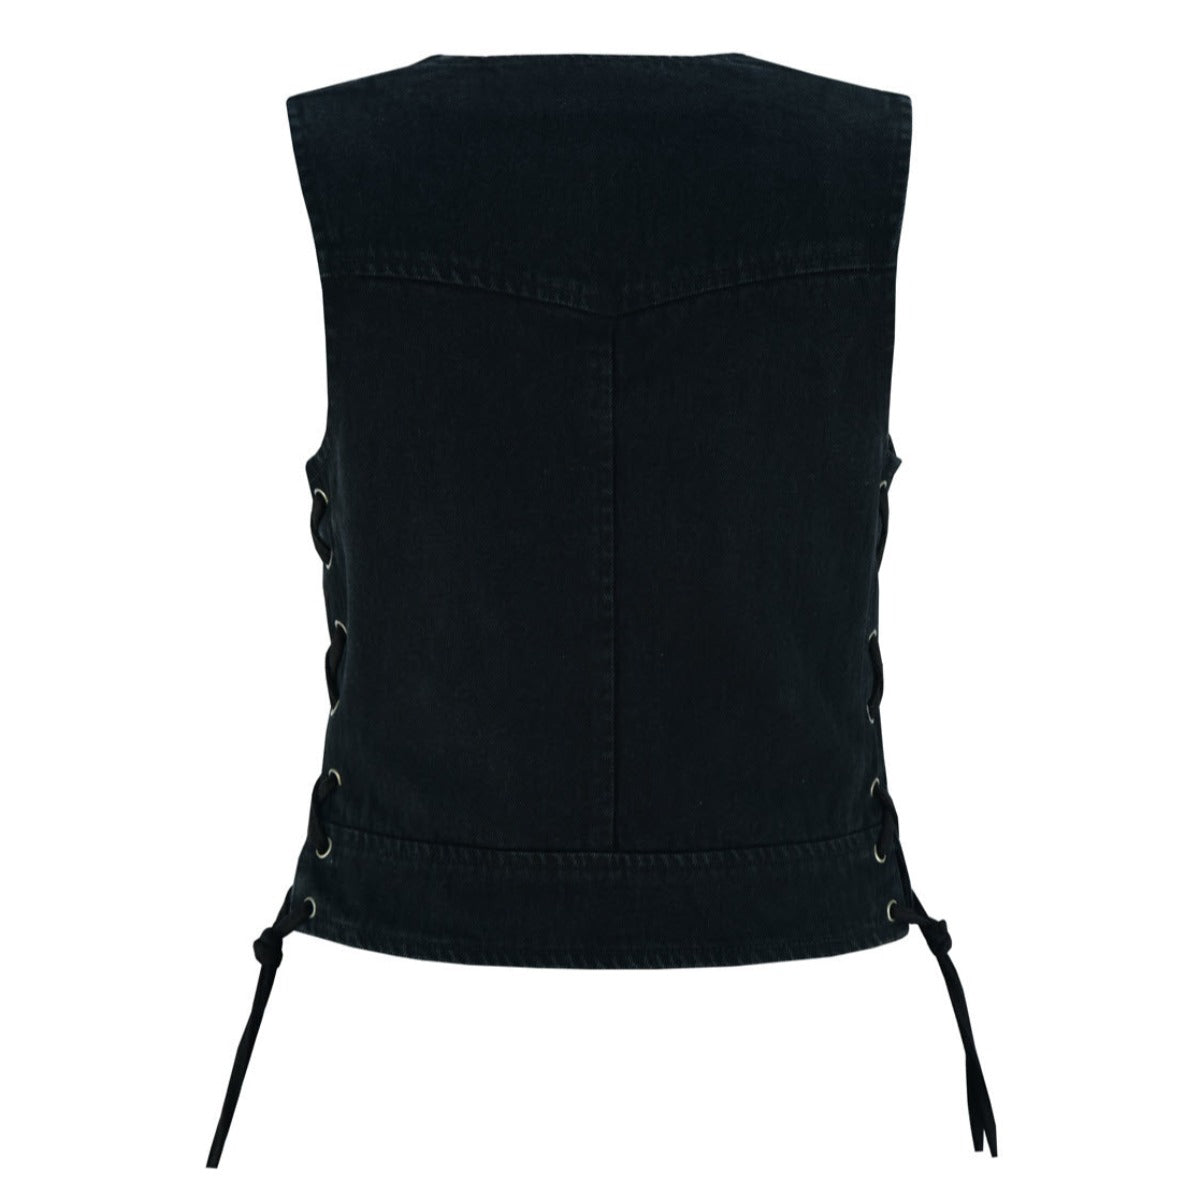 Vance Leather Women's Denim V-Neck Vest w/Zipper & Side Laces